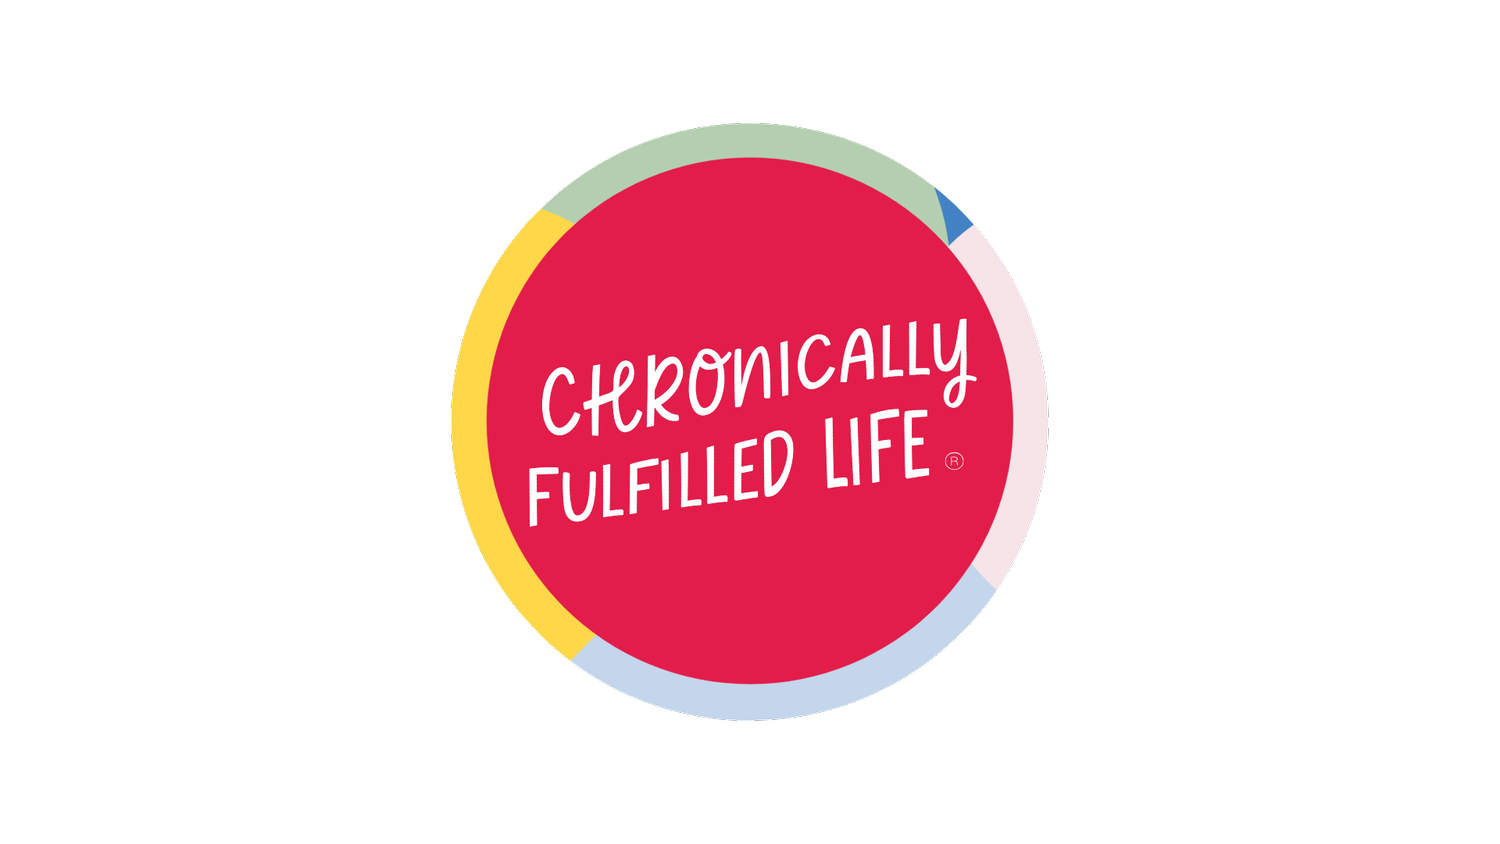 Chronically Fulfilled Life